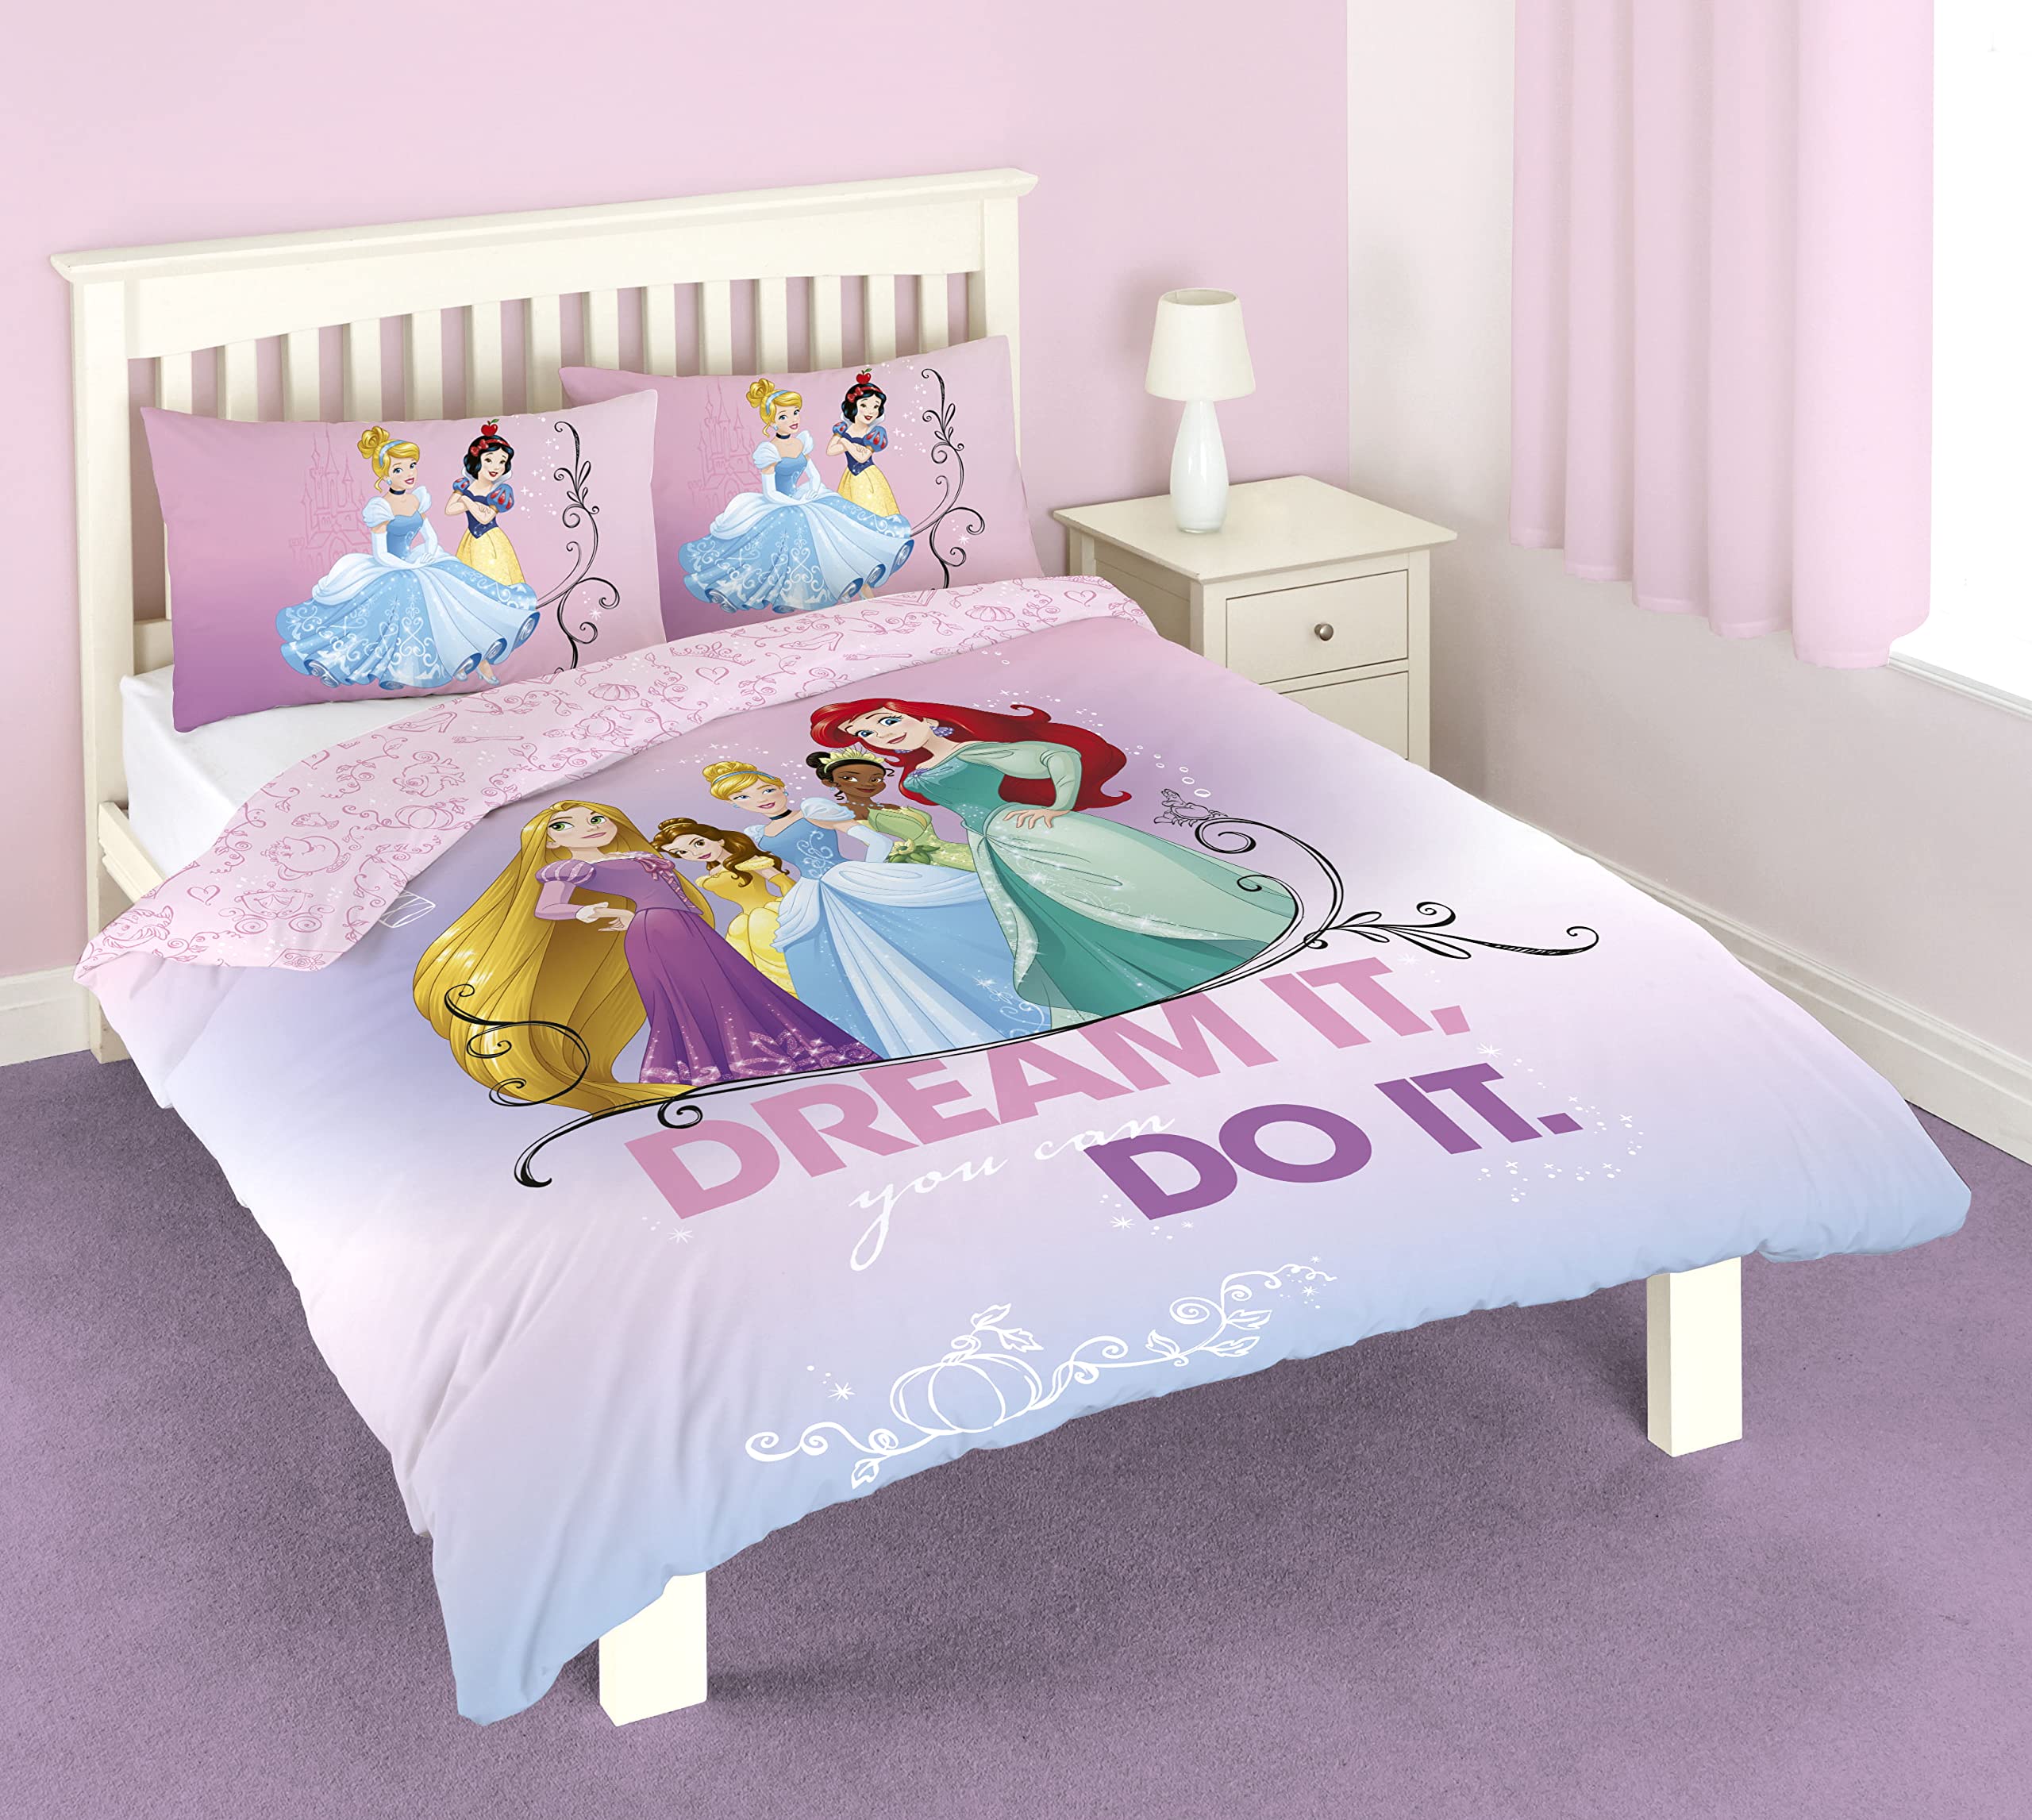 Disney Princess Dream It Do It Double Duvet Cover Set